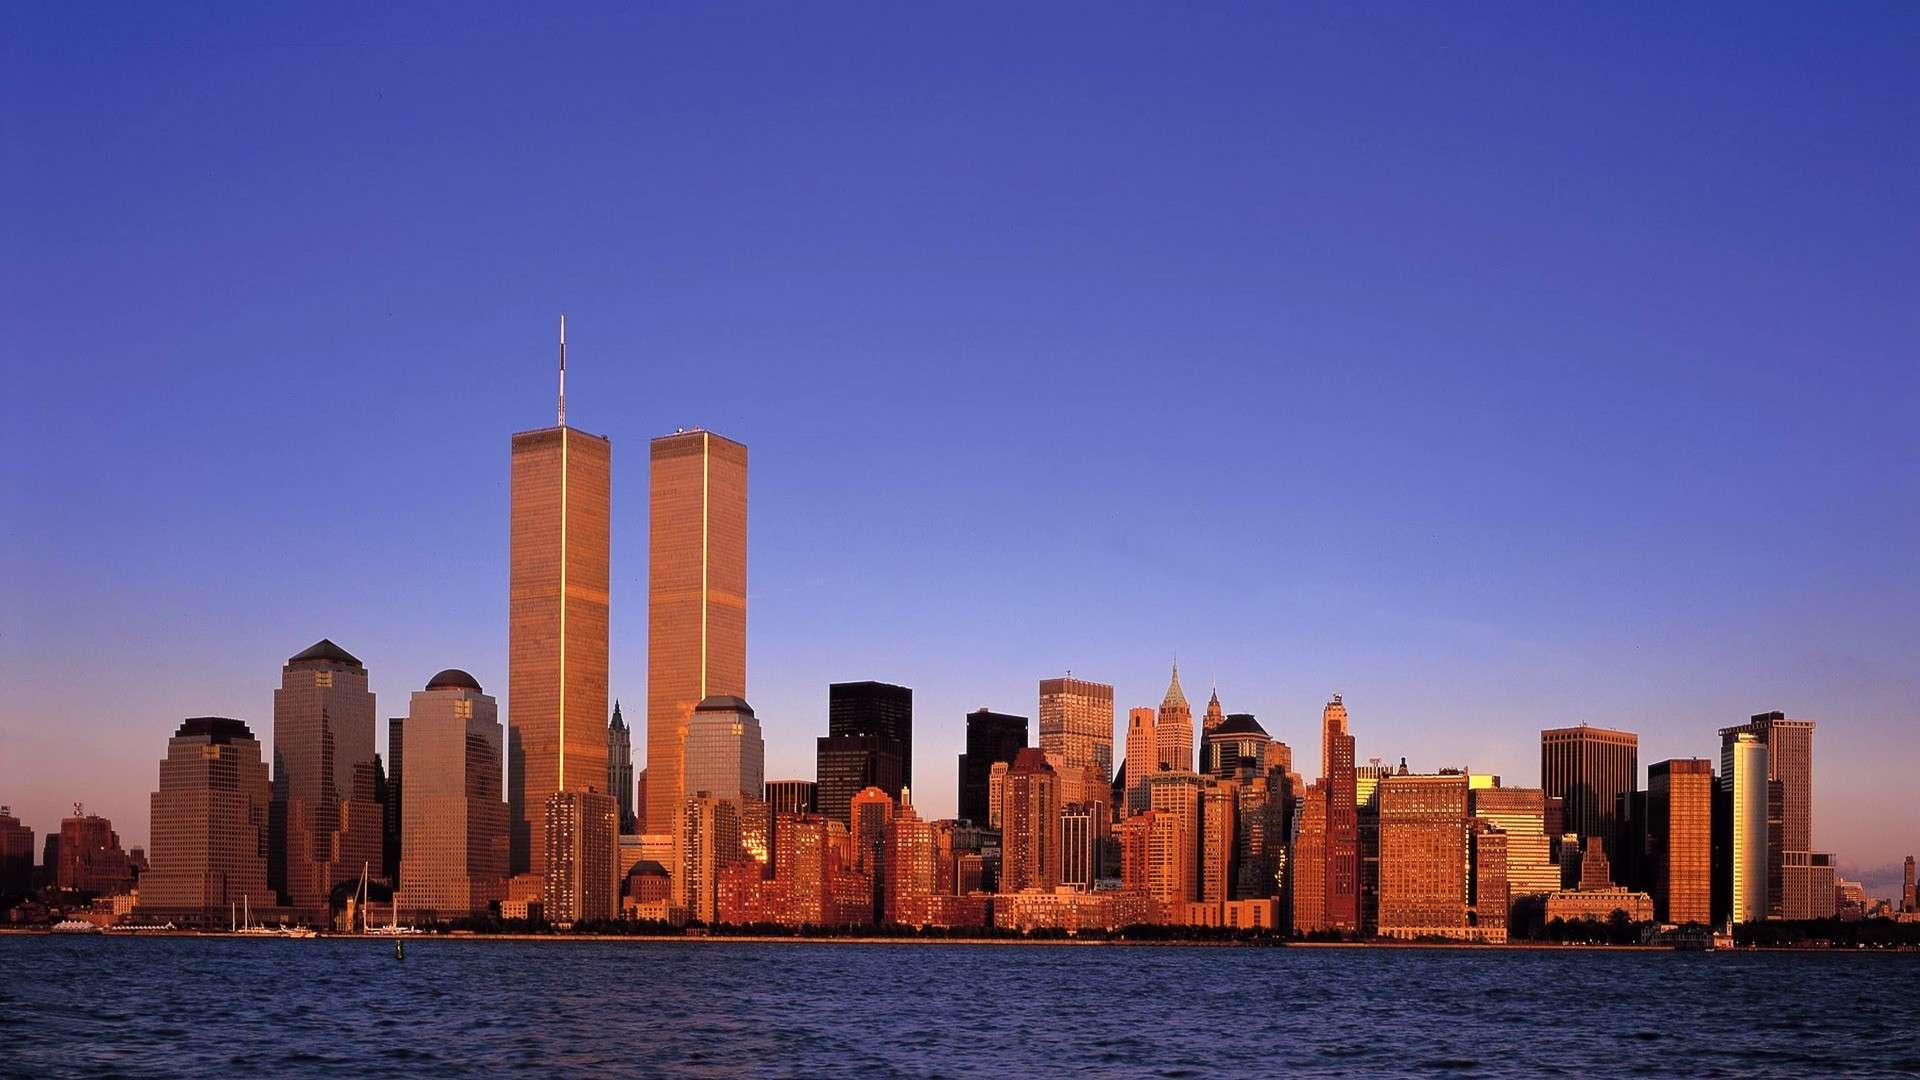 LE 11 SEPTEMBRE 2001 à NEW YORK image 2